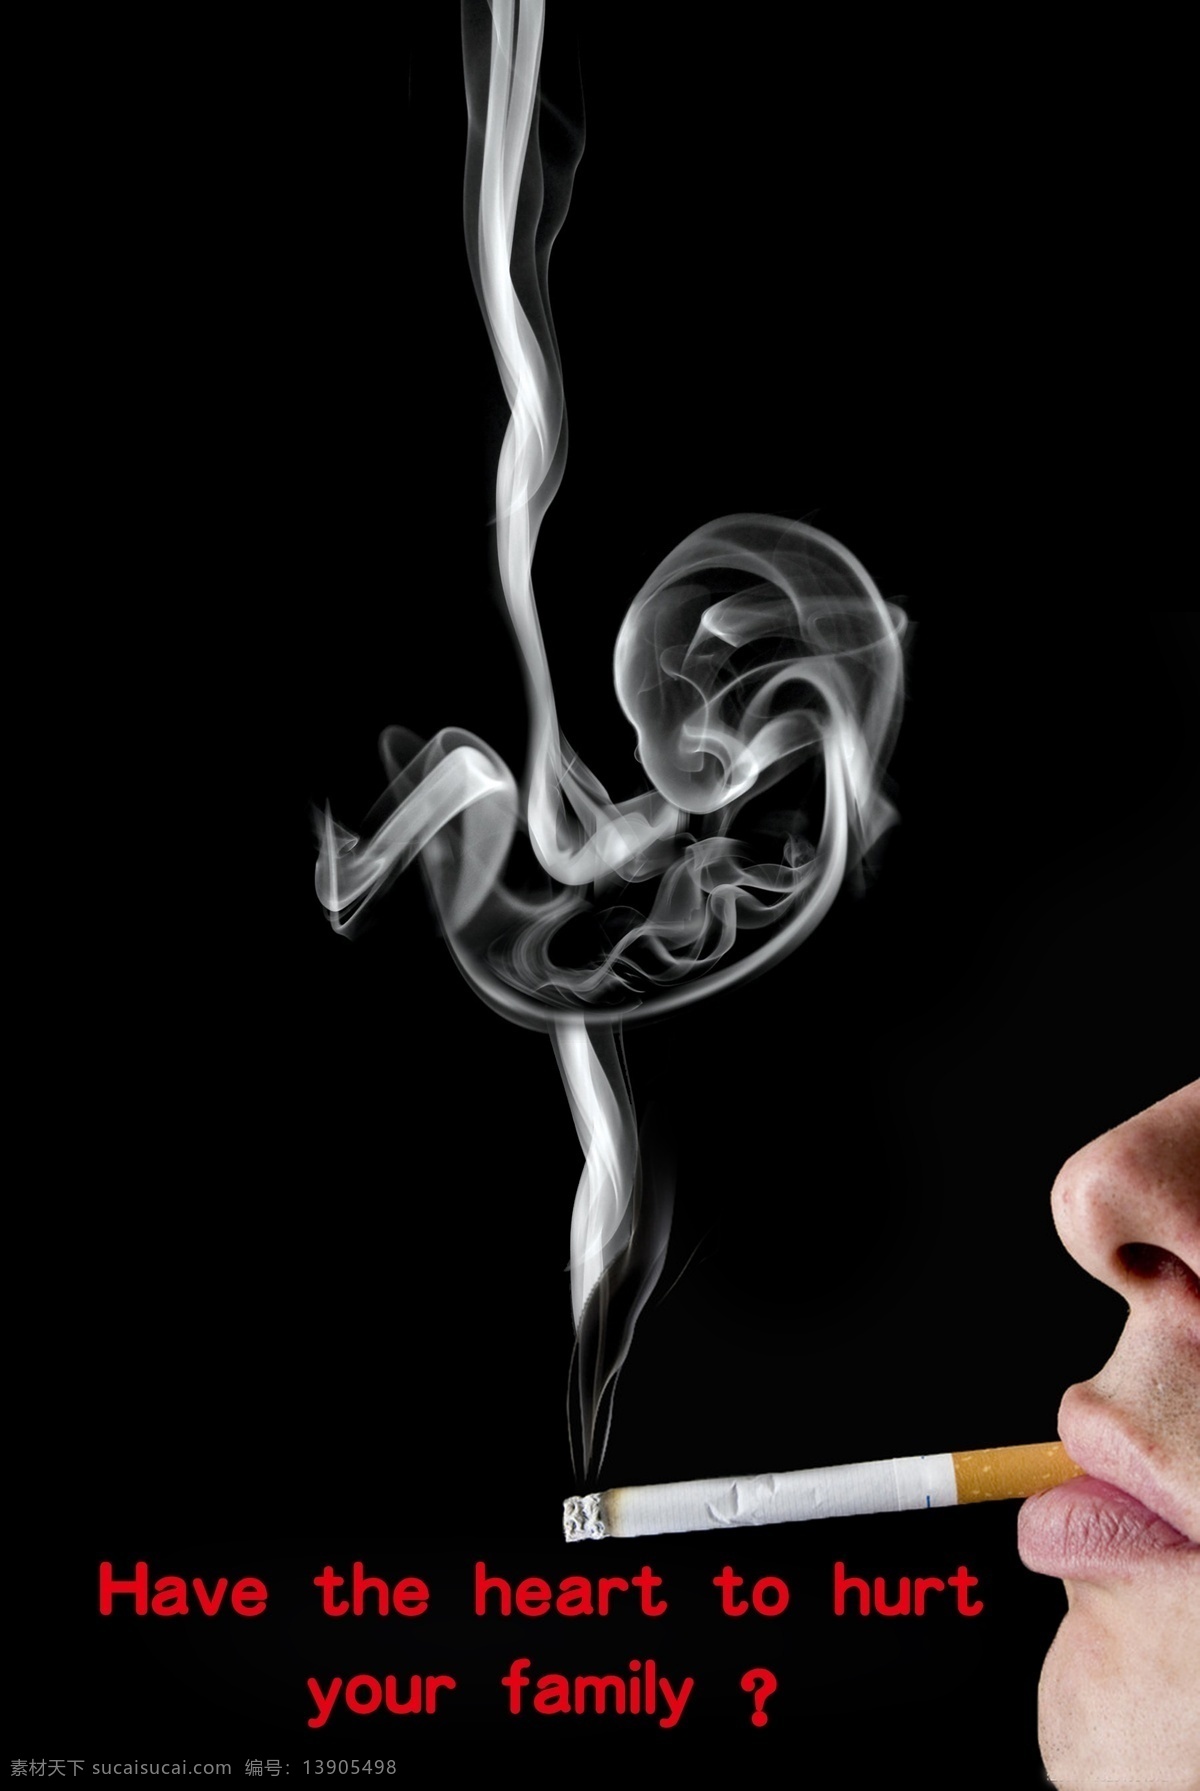 吸烟 有害 招贴 公益 广告设计模板 源文件 吸烟对 胎儿 环保公益海报